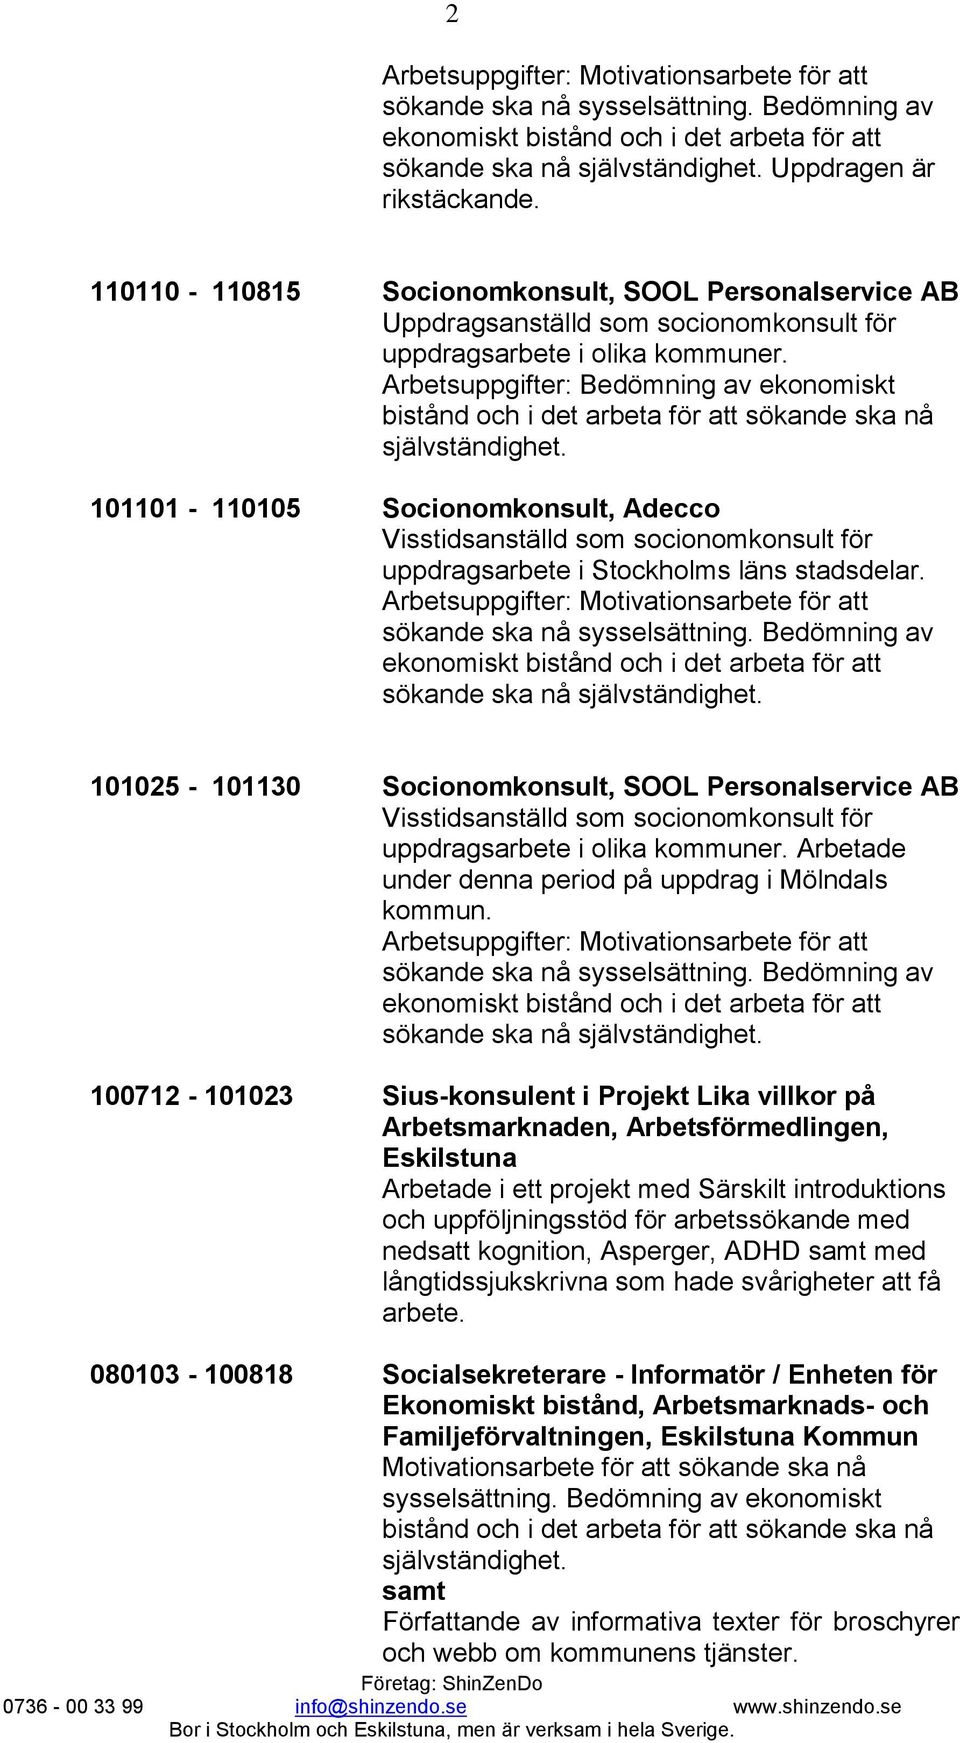 Arbetsuppgifter: Bedömning av ekonomiskt 101101-110105 Socionomkonsult, Adecco Visstidsanställd som socionomkonsult för uppdragsarbete i Stockholms läns stadsdelar.